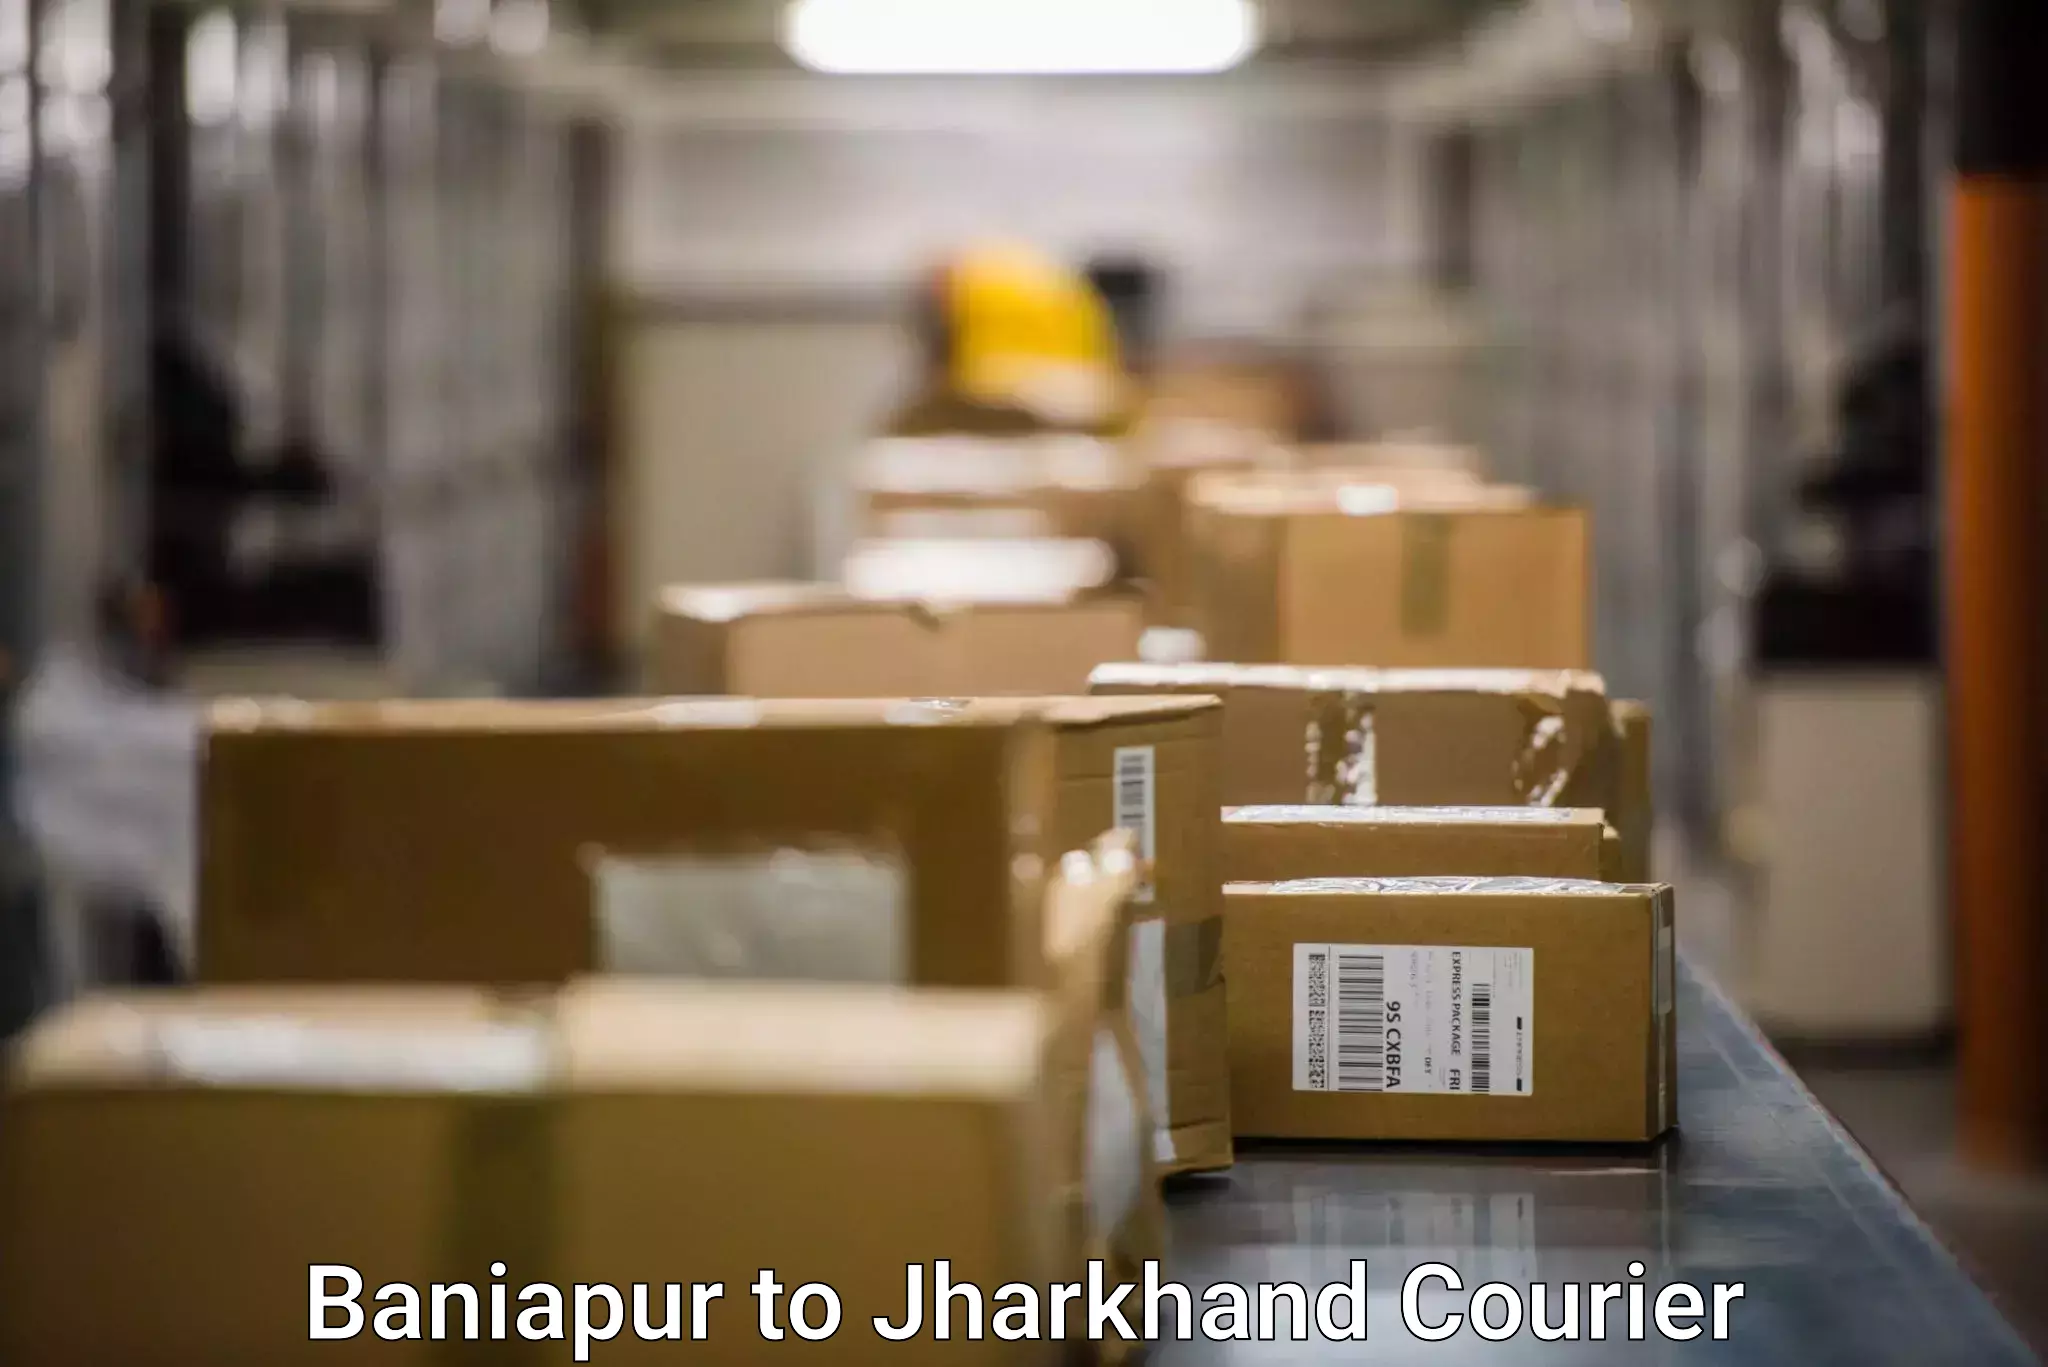 Door-to-door freight service Baniapur to Tandwa